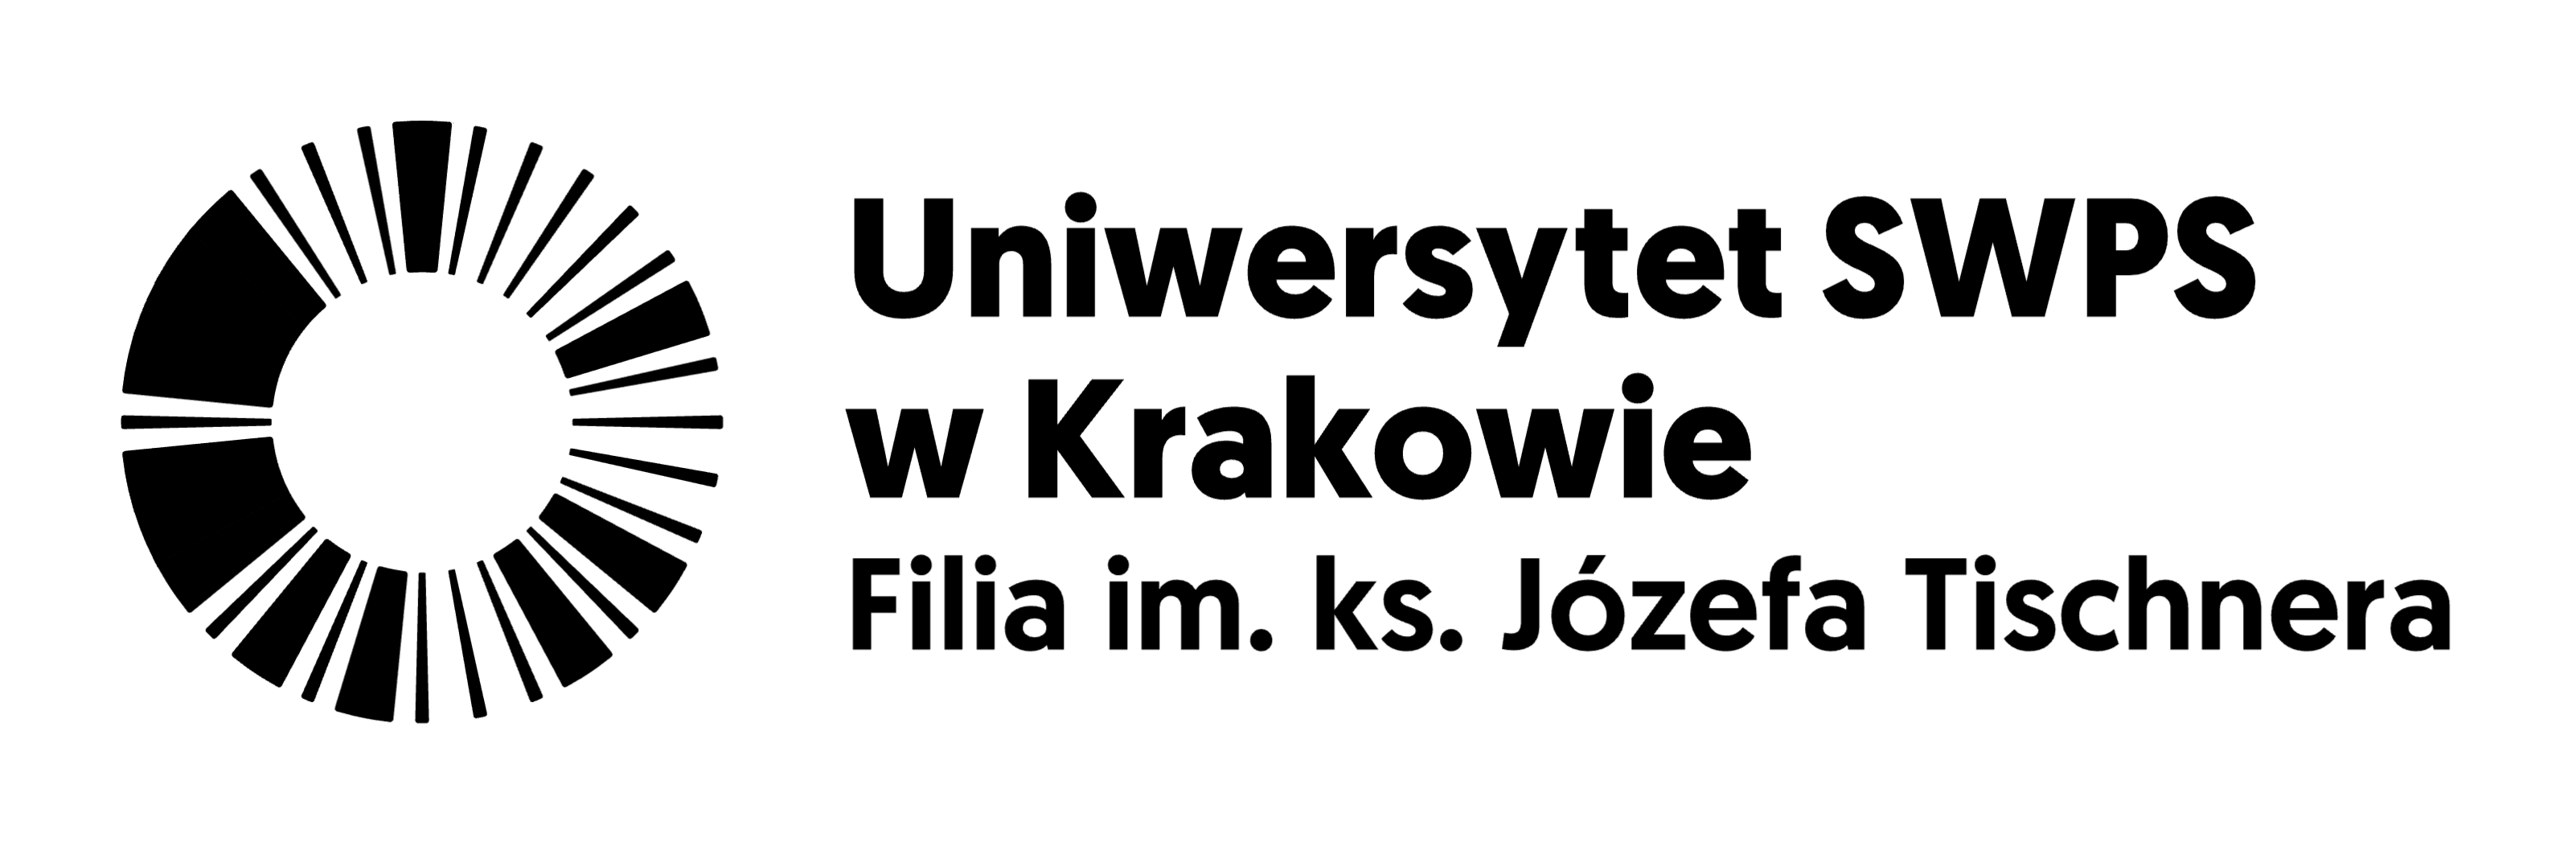 Uniwersytet SWPS w Krakowie - logo